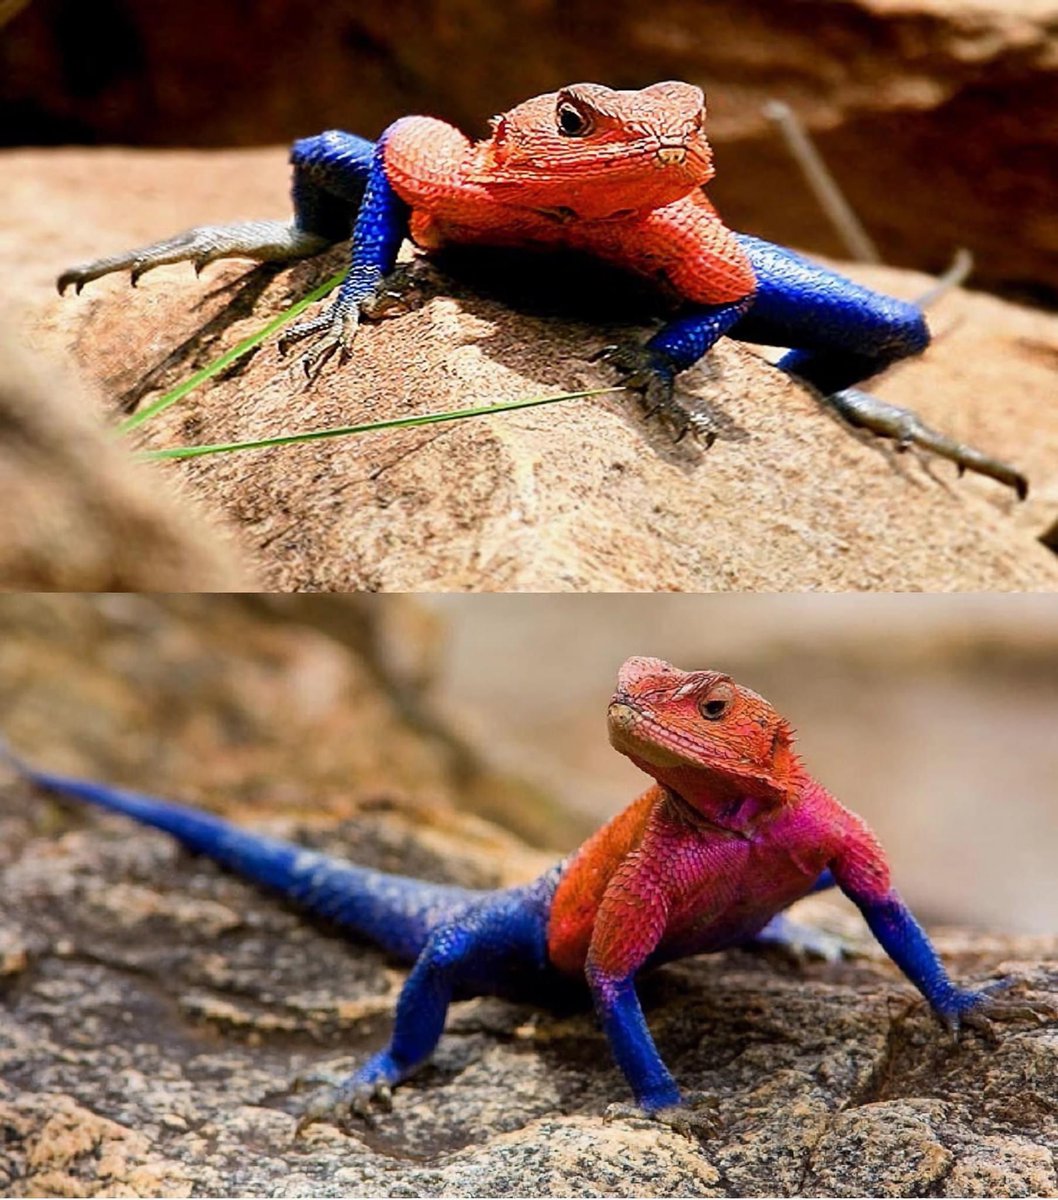 Buenos días 😙 Lagarto spiderman El Agama mwanzae o popularmente conocido como lagarto araña, un reptil nativo de Kenia, Ruanda y Tanzania Tiene escamas azules y rojas que le dan un curioso parecido con el personaje de Marvel Spiderman.